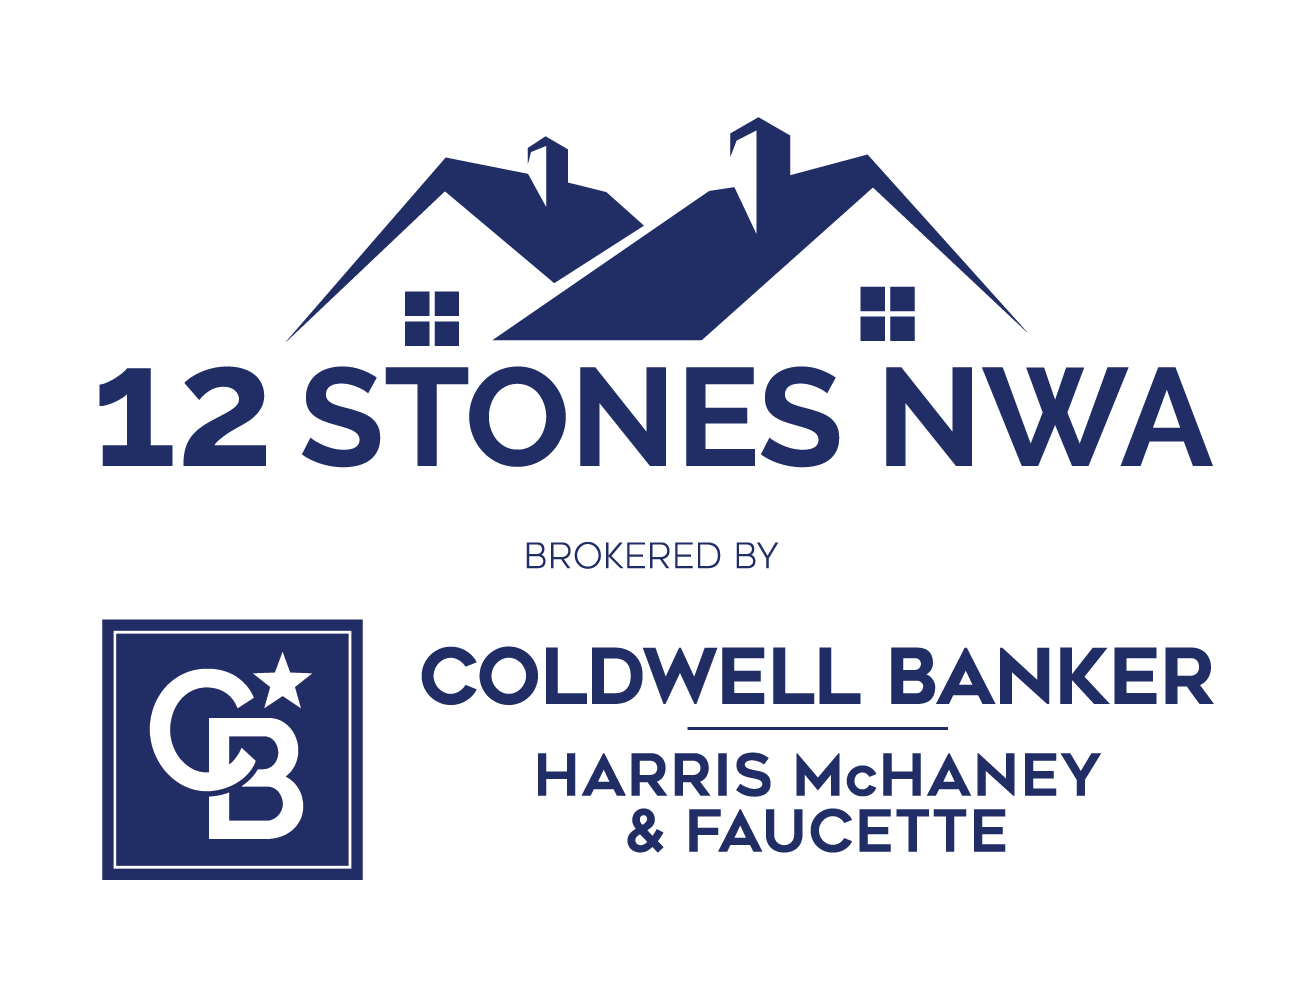 12 Stones NWA Coldwell Banker HMF - Blue